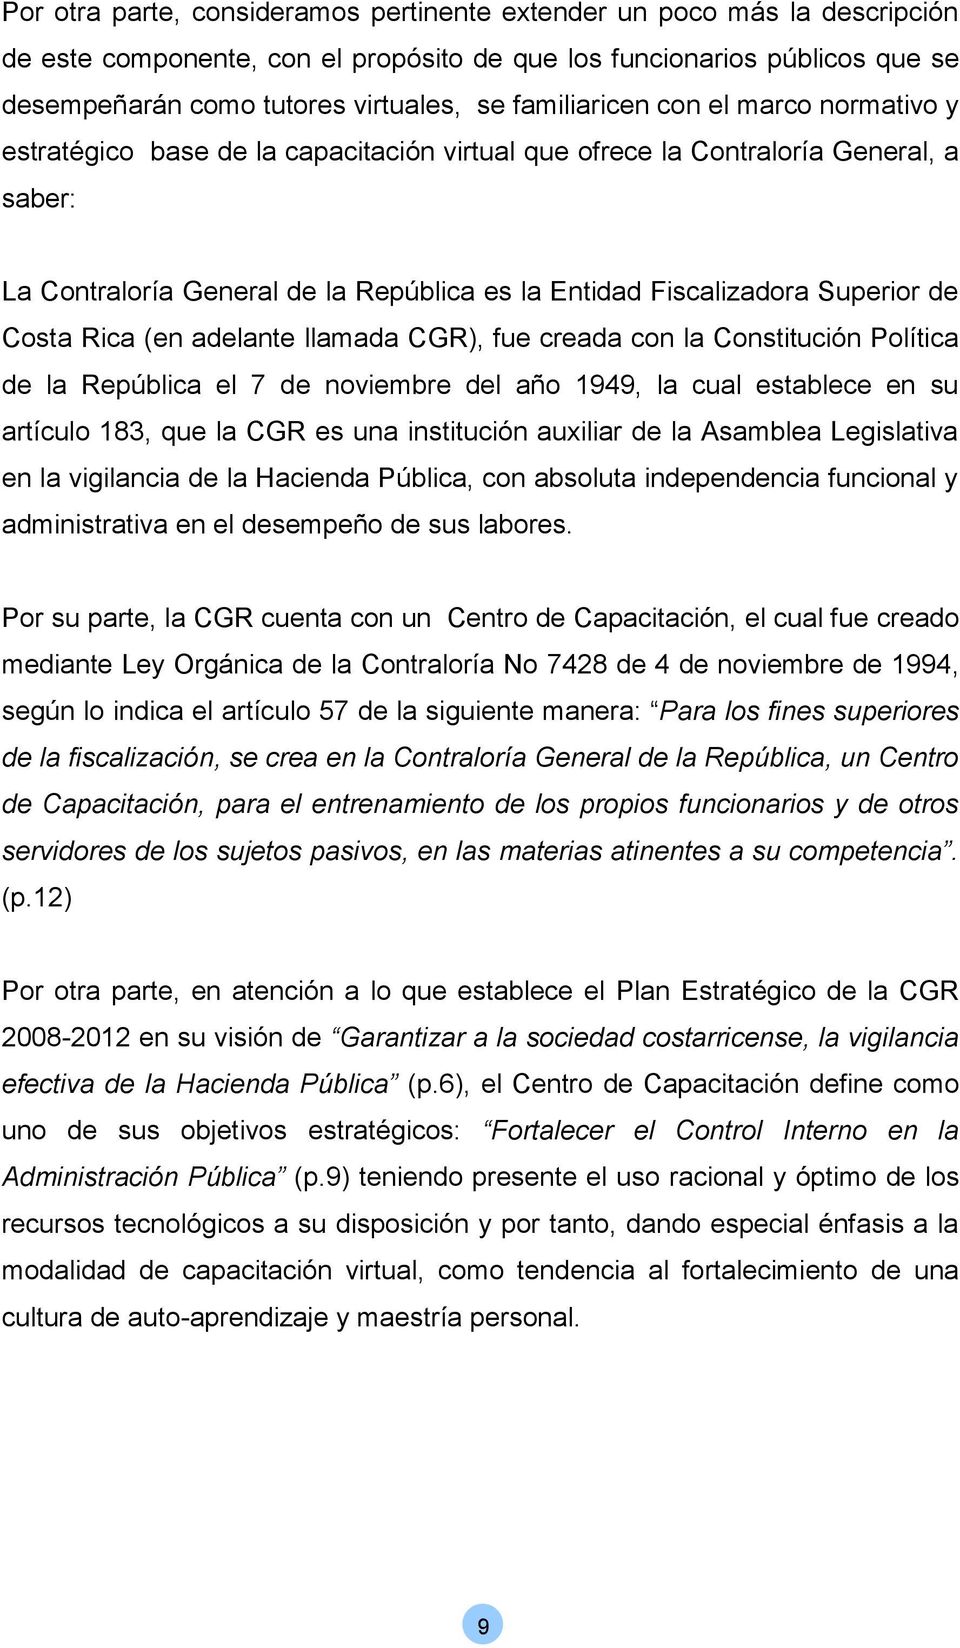 Superior de Costa Rica (en adelante llamada CGR), fue creada con la Constitución Política de la República el 7 de noviembre del año 1949, la cual establece en su artículo 183, que la CGR es una